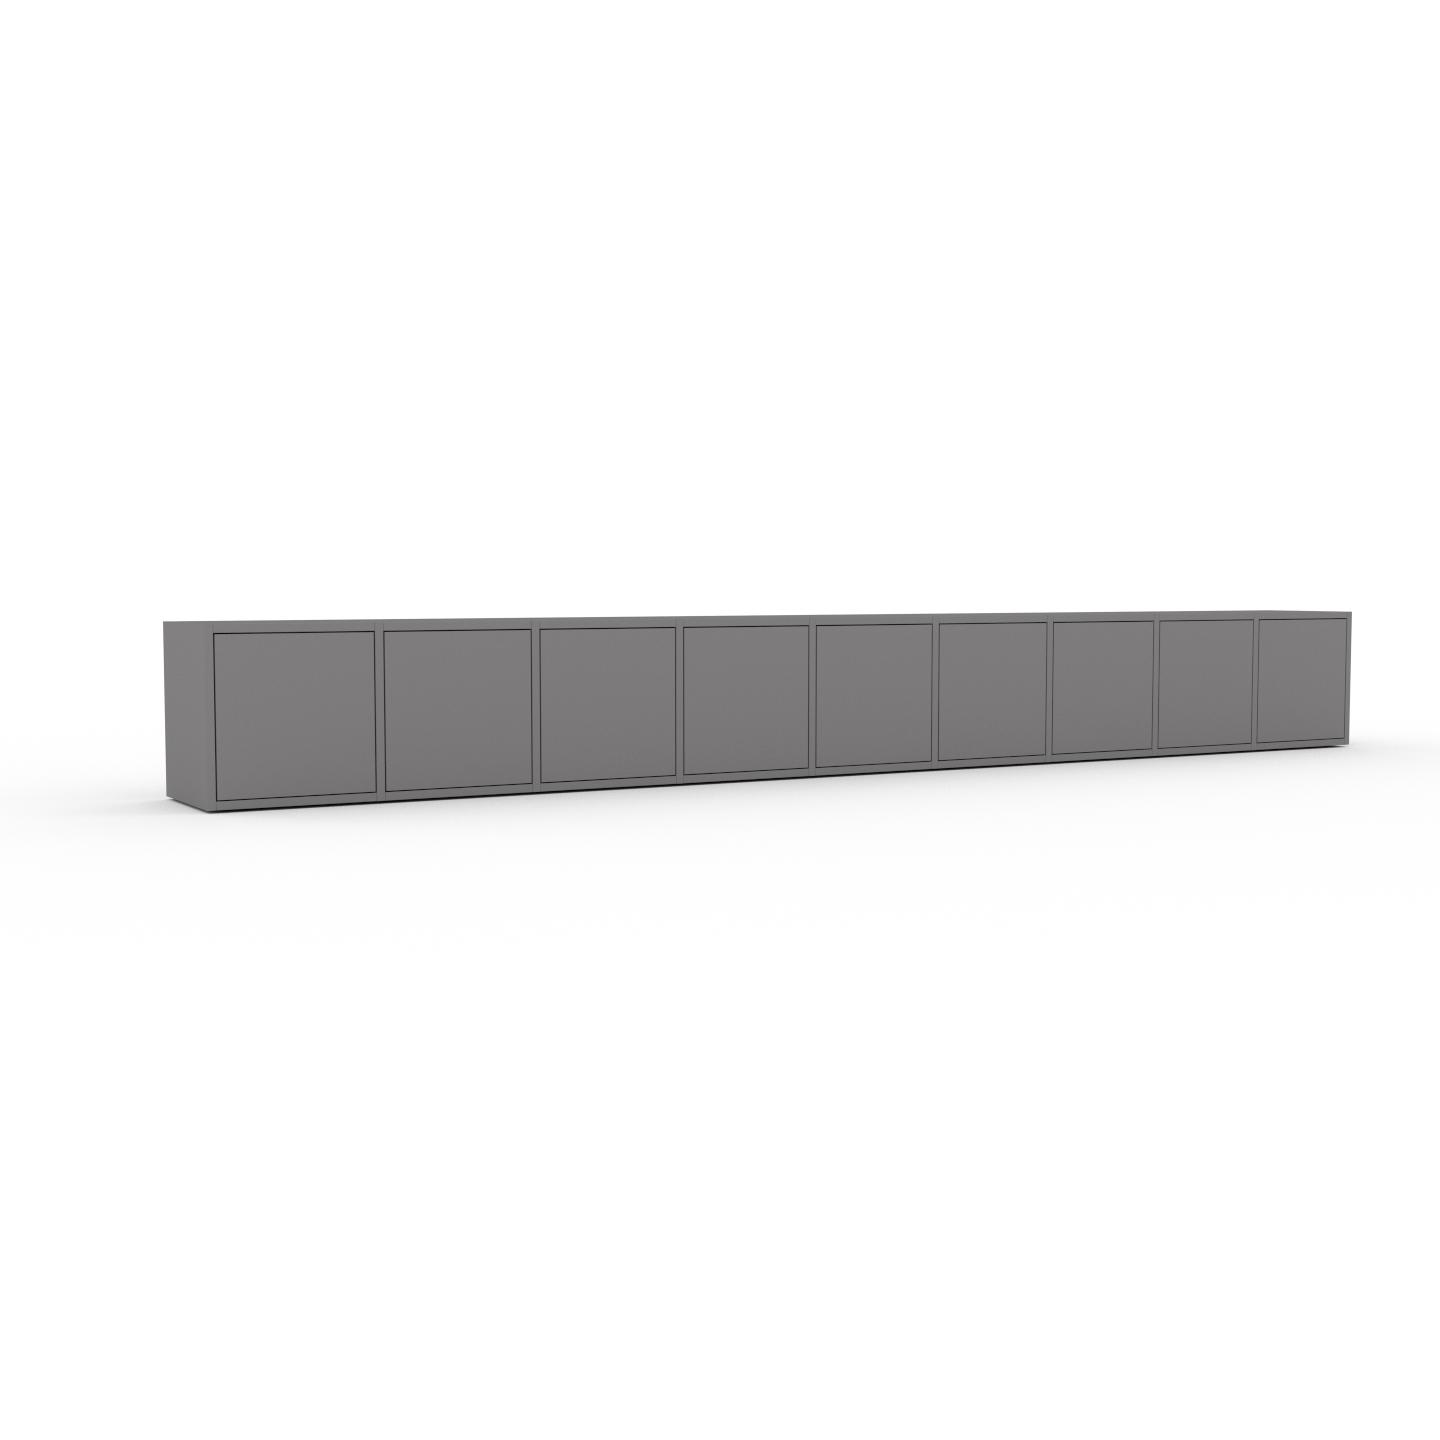 MYCS Bücherregal Grau - Modernes Regal für Bücher: Türen in Grau - 349 x 41 x 35 cm, Individuell konfigurierbar